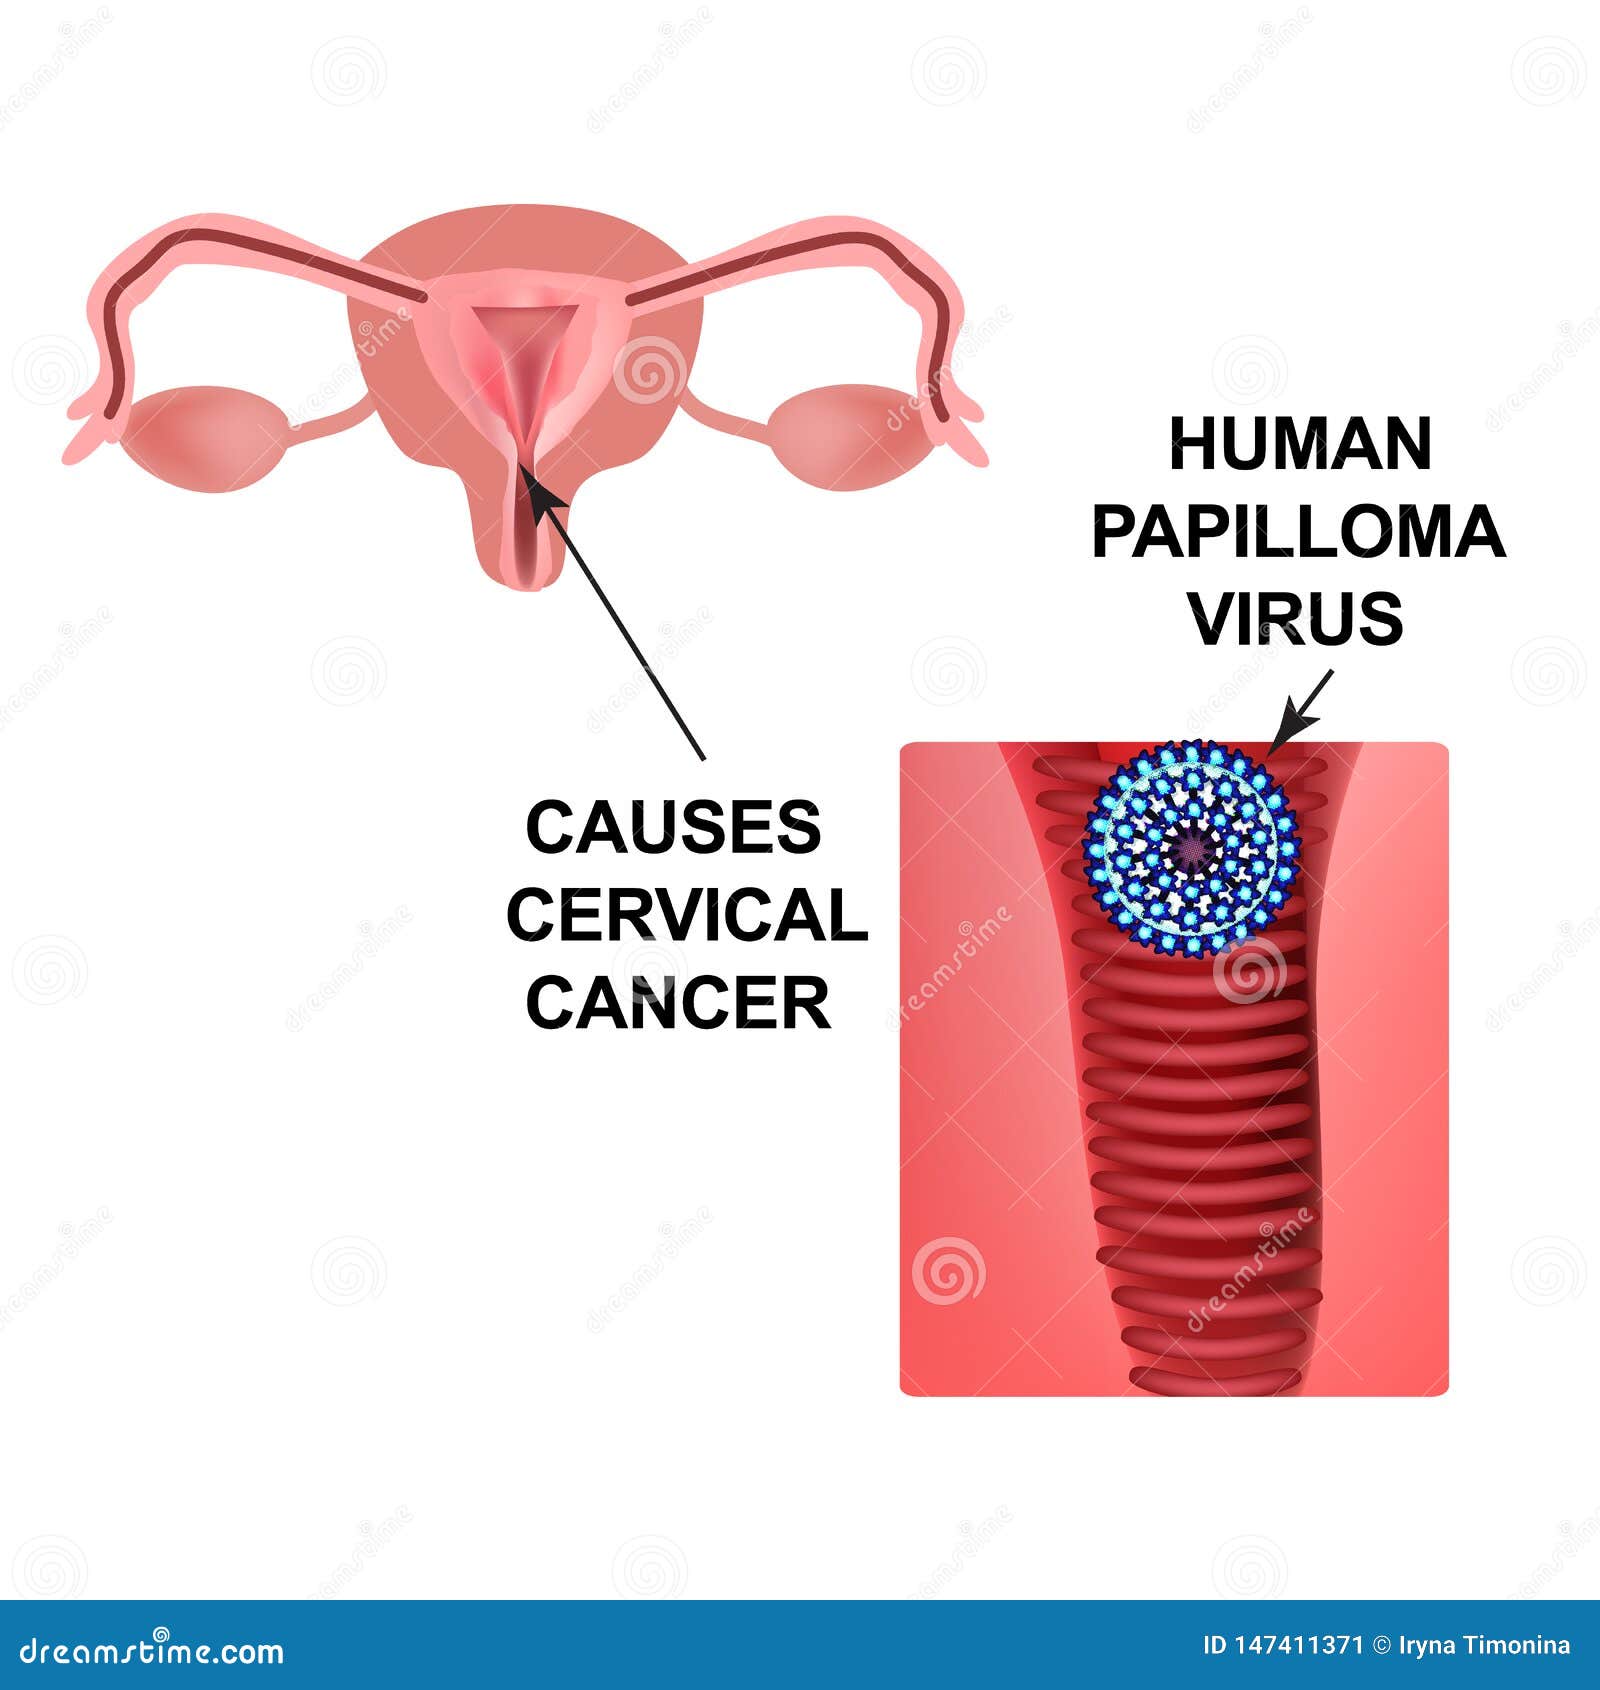 papillomas cause cancer)